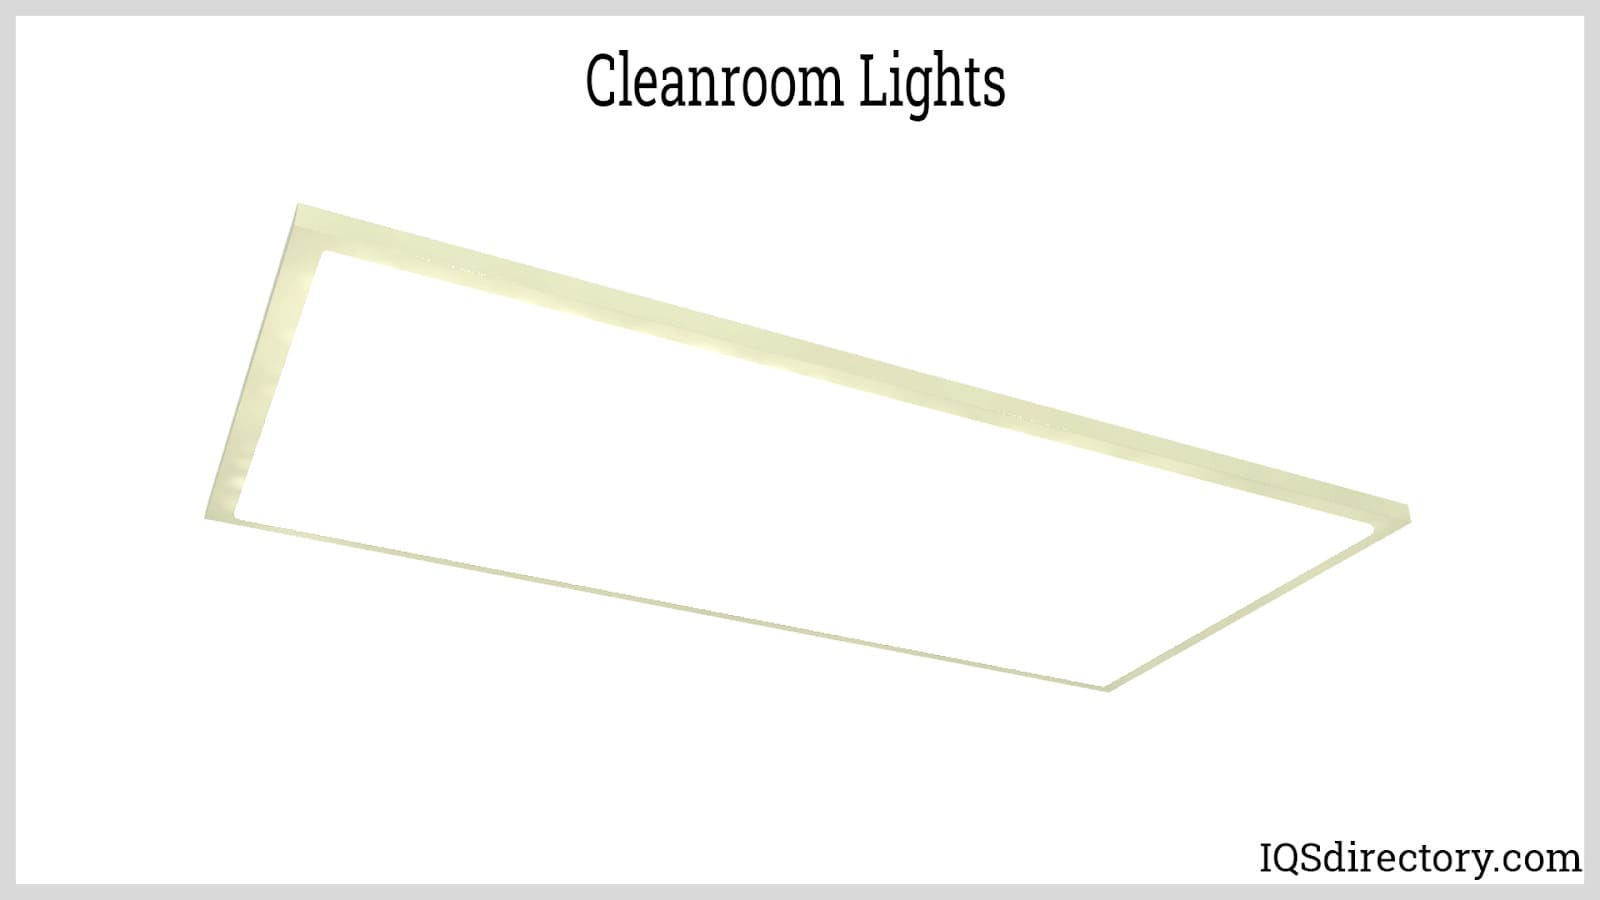 Cleanroom Lights